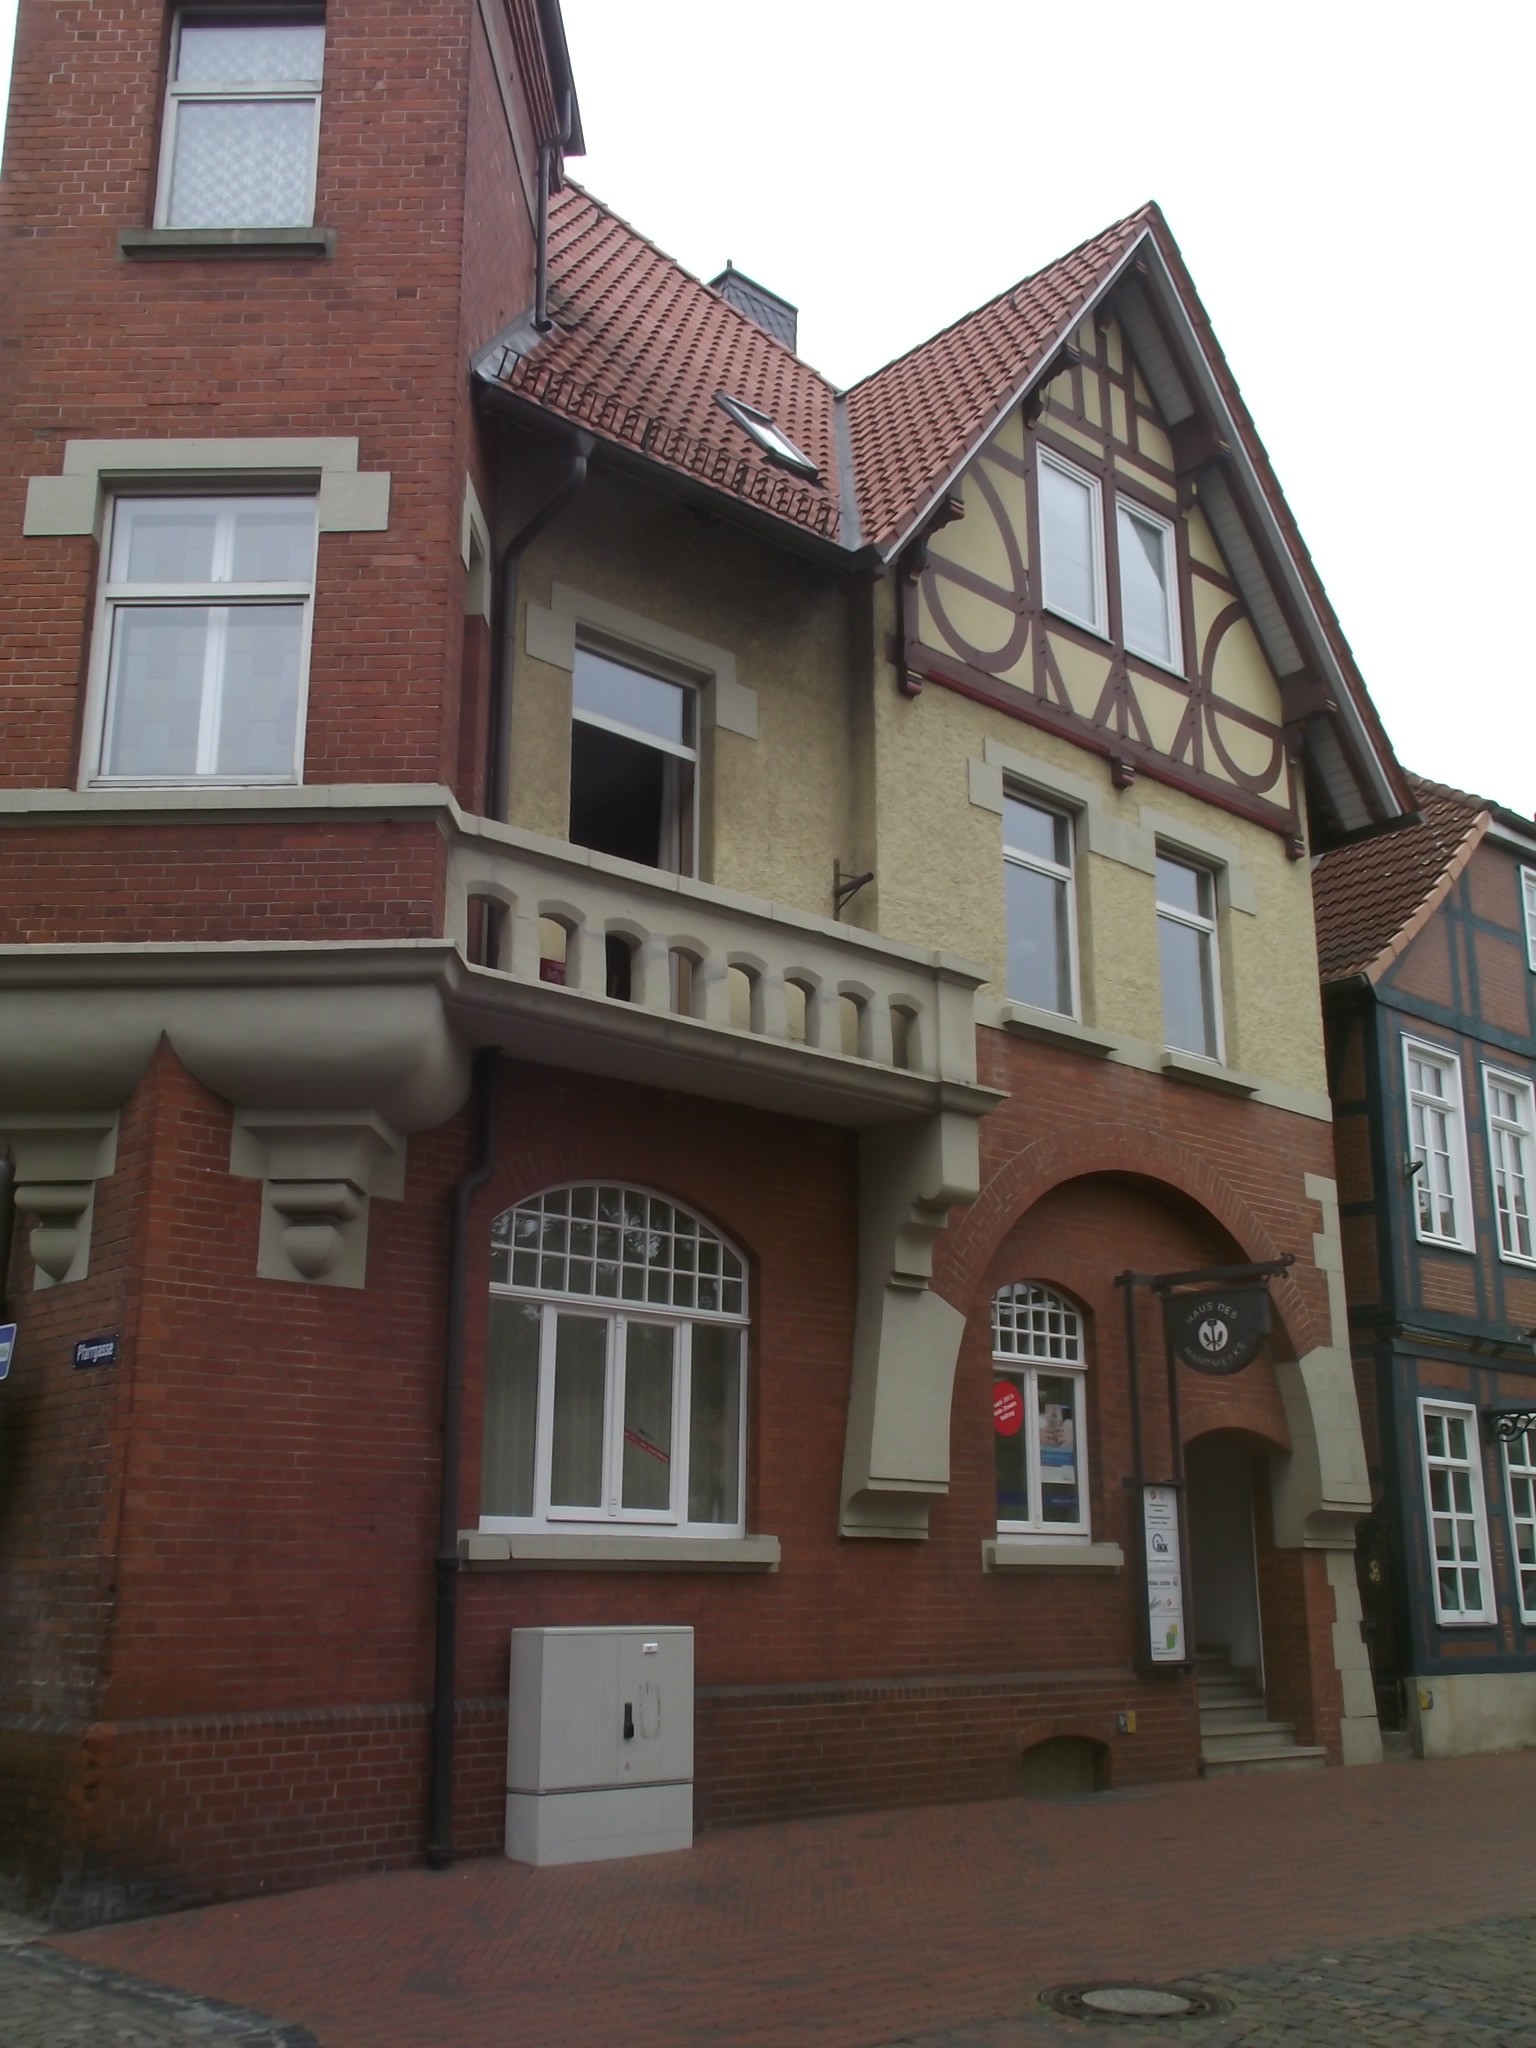 Haus des Handwerks in Neustadt am Rübenberge